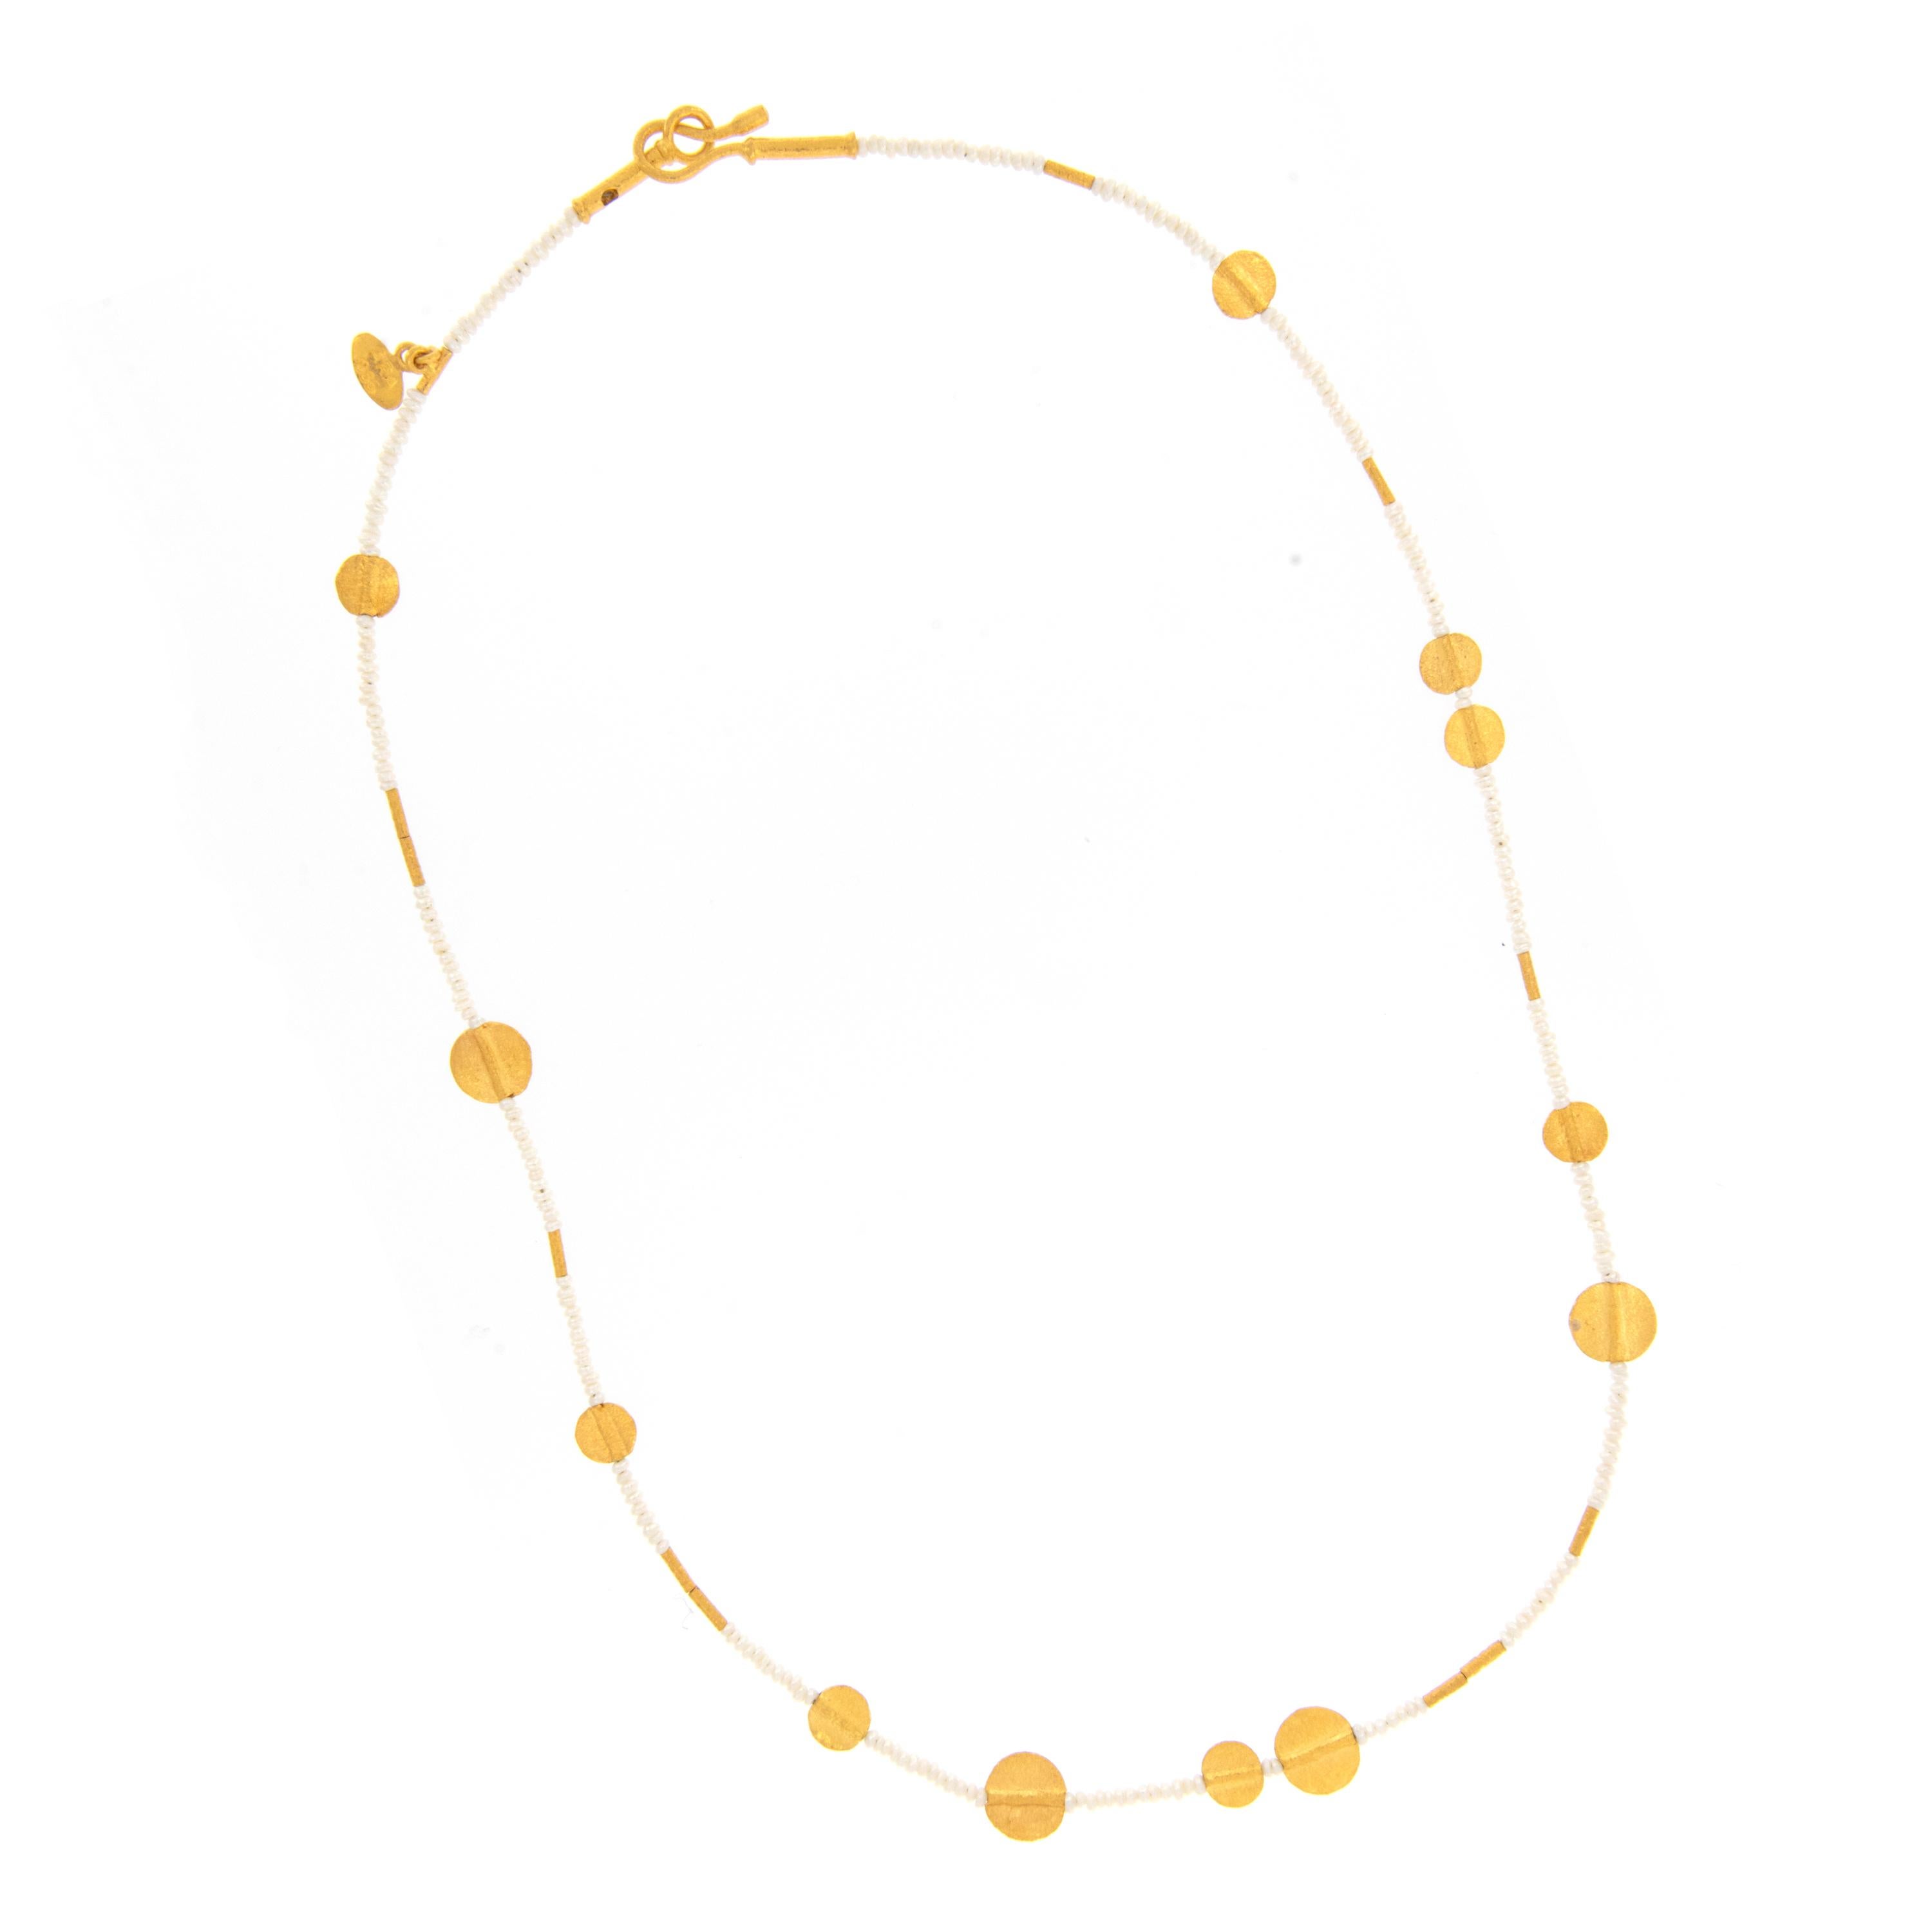 Une combinaison parfaite - or jaune pur 24 carats et perles ! Les perles sont depuis longtemps connues pour symboliser le luxe, la grâce et la pureté. Rendues célèbres à l'époque victorienne, les perles de rocaille ont été transformées en bijoux par